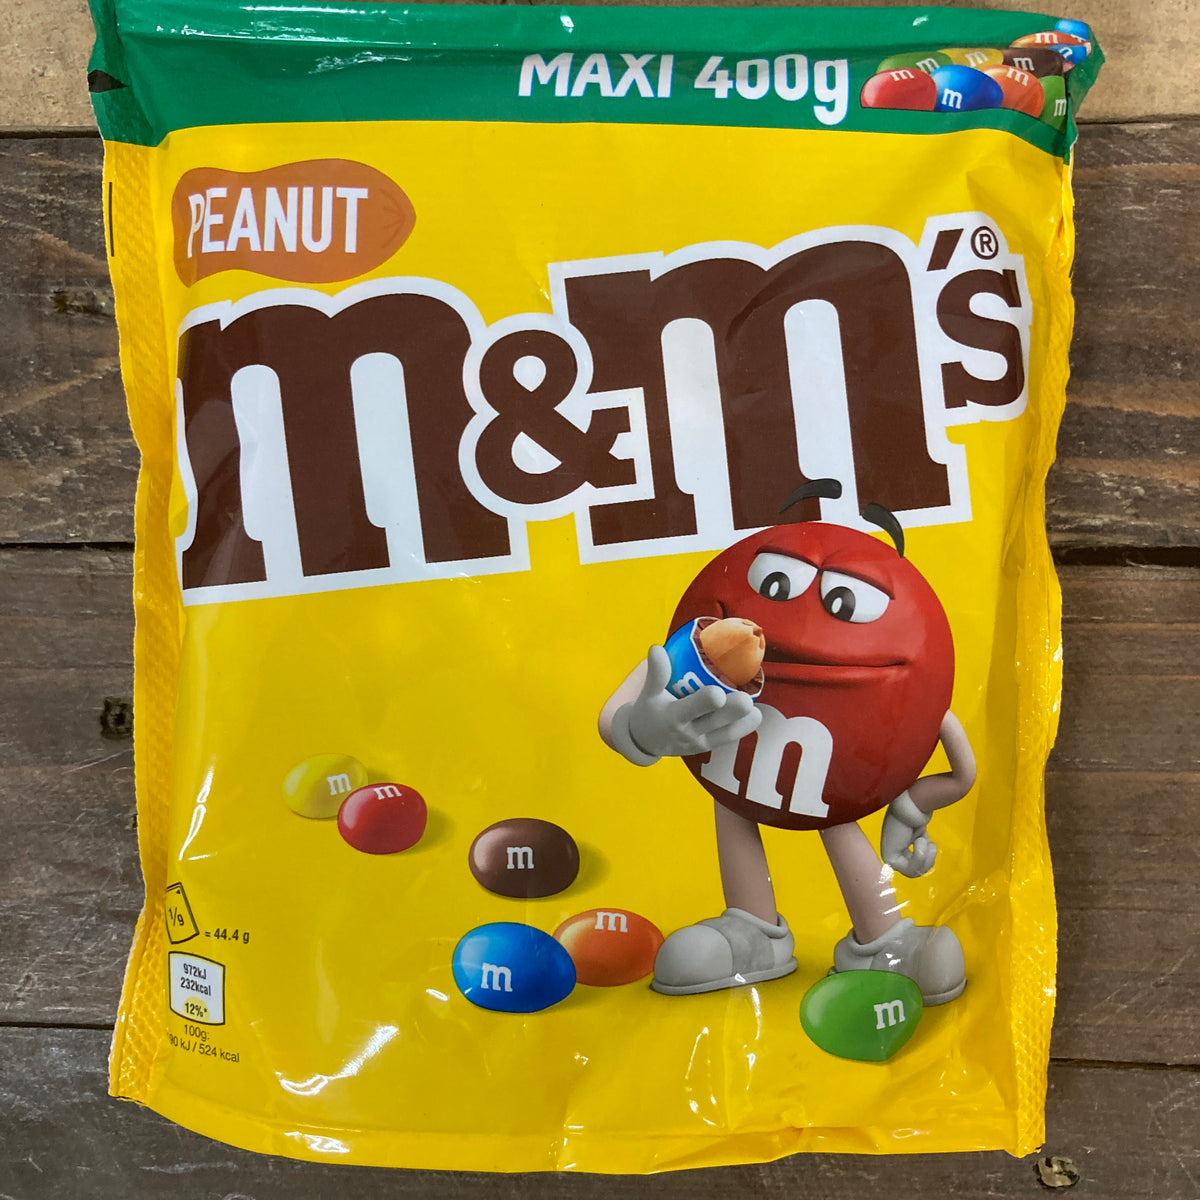 M&M'S Peanut Milk Chocolate Party Bulk Bag, Chocolate Gift & Movie Night  Snacks, 1kg